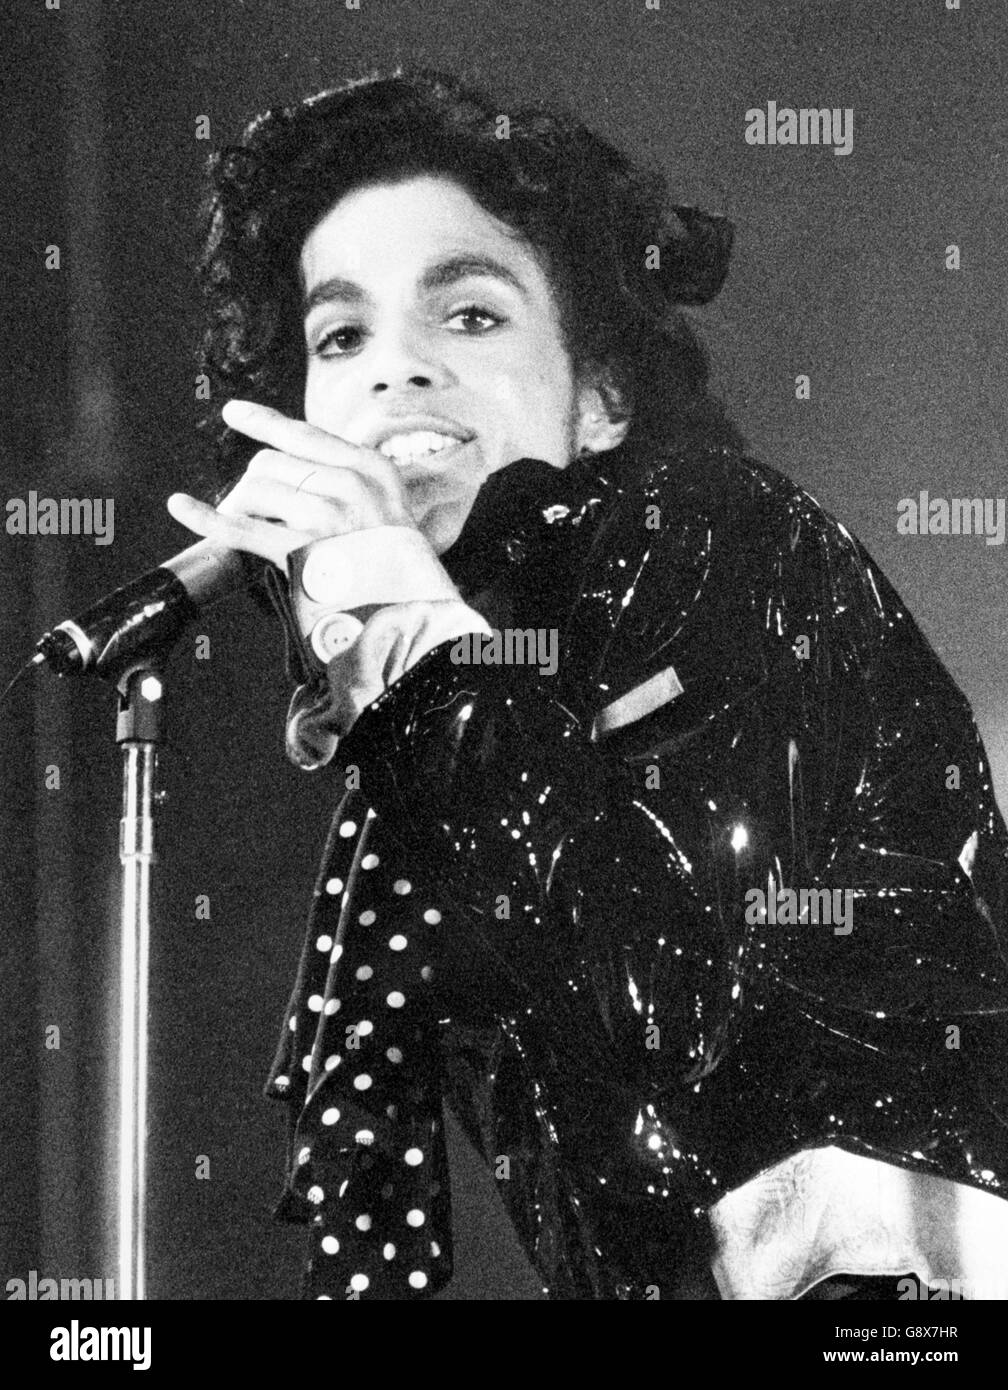 Prince.Prince, star pop américaine, 30. Banque D'Images